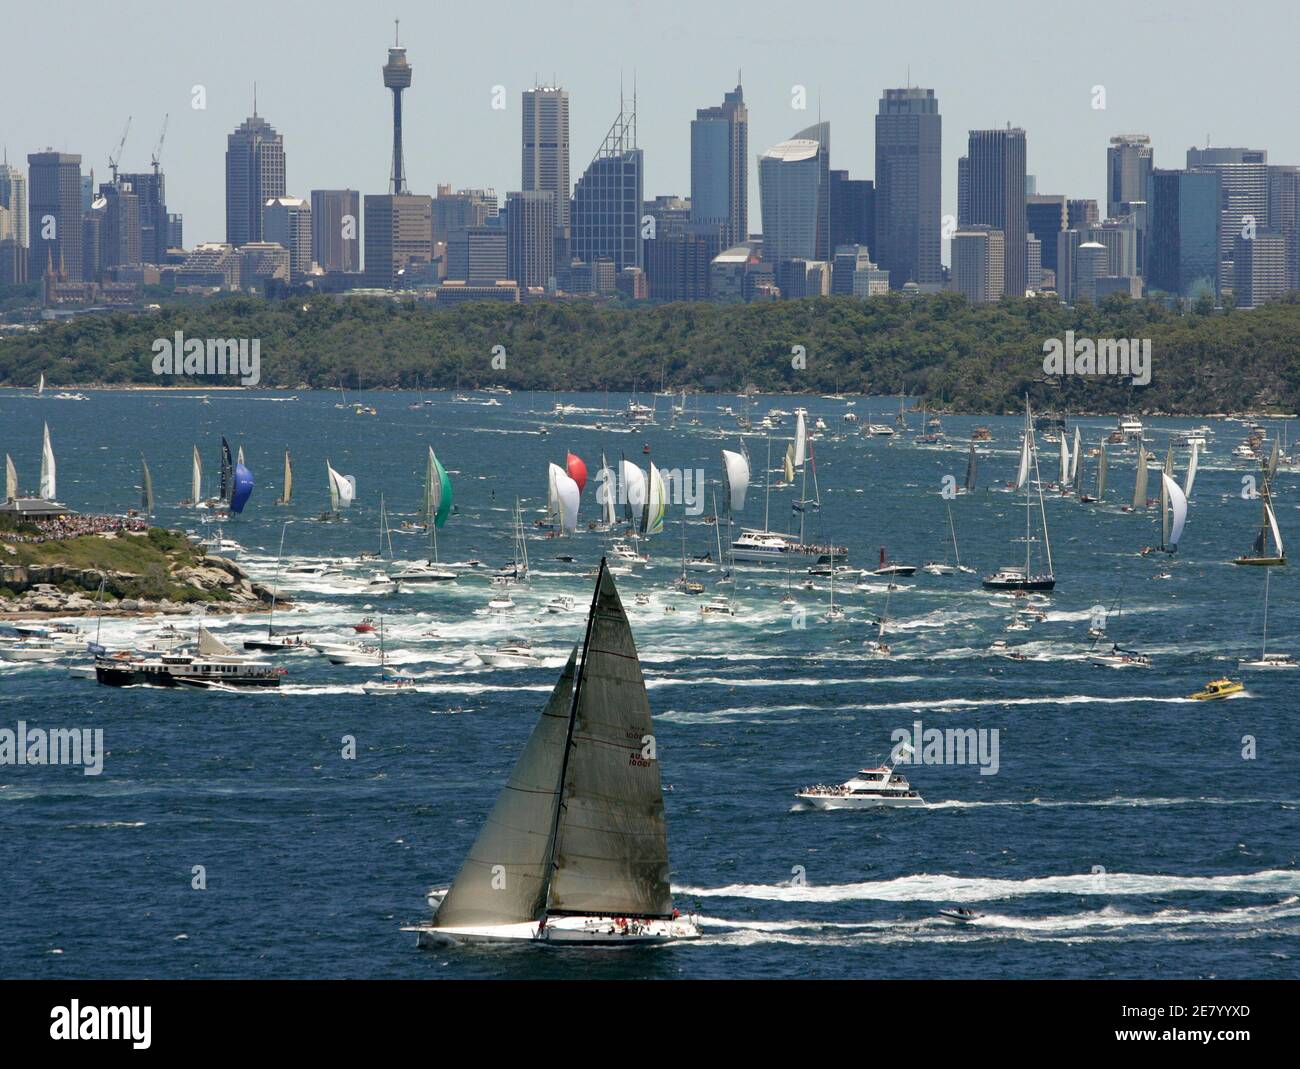 Wild Oats XI passe devant les gratte-ciel de la ville car elle est le premier yacht à atteindre les Sydney Heads après le début de la course annuelle de yacht Sydney-Hobart le 26 décembre 2006. REUTERS/will Burgess (AUSTRALIE) Banque D'Images